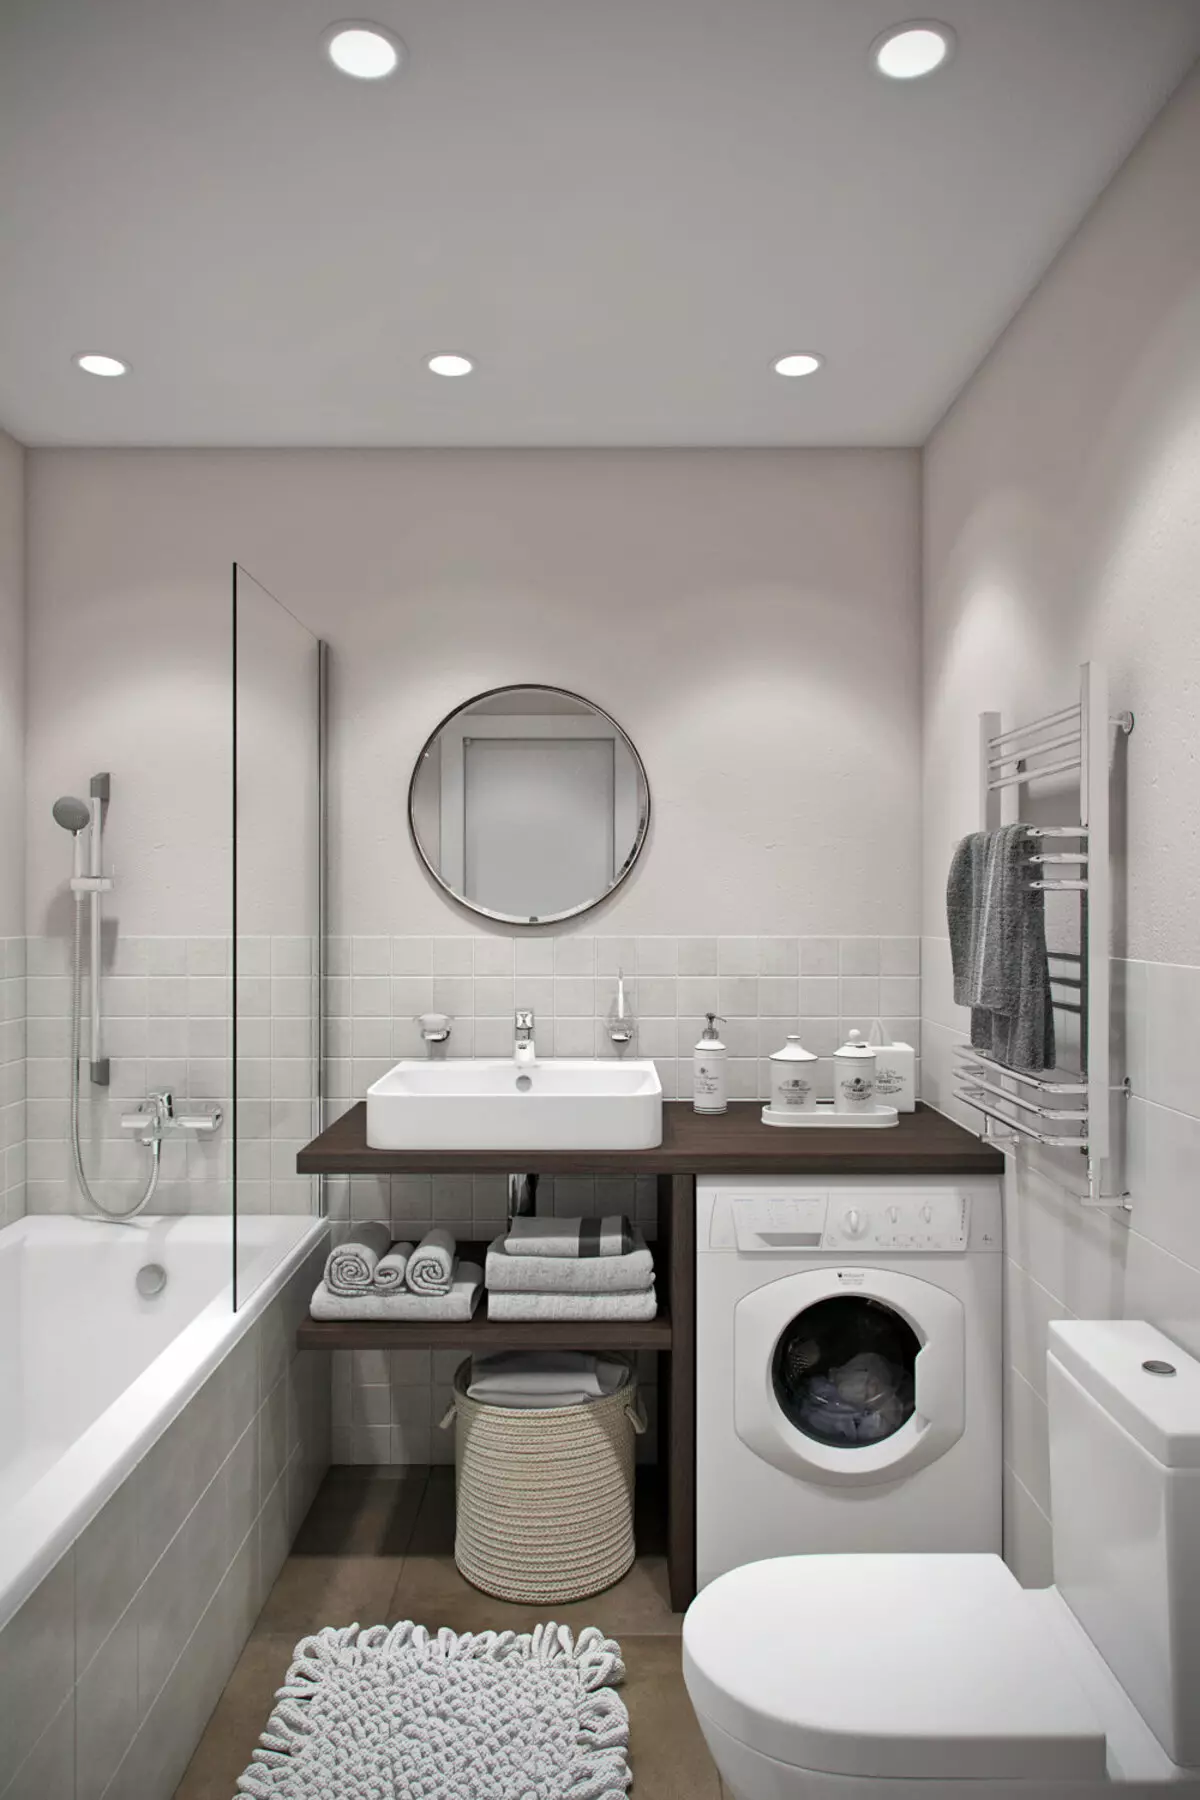 עיצוב אמבטיה בשילוב עם שירותים מרובע 3. M (76 תמונות): עיצוב פנים חדר אמבטיה עם מכונת כביסה, הנחת חדר קטן 10068_6